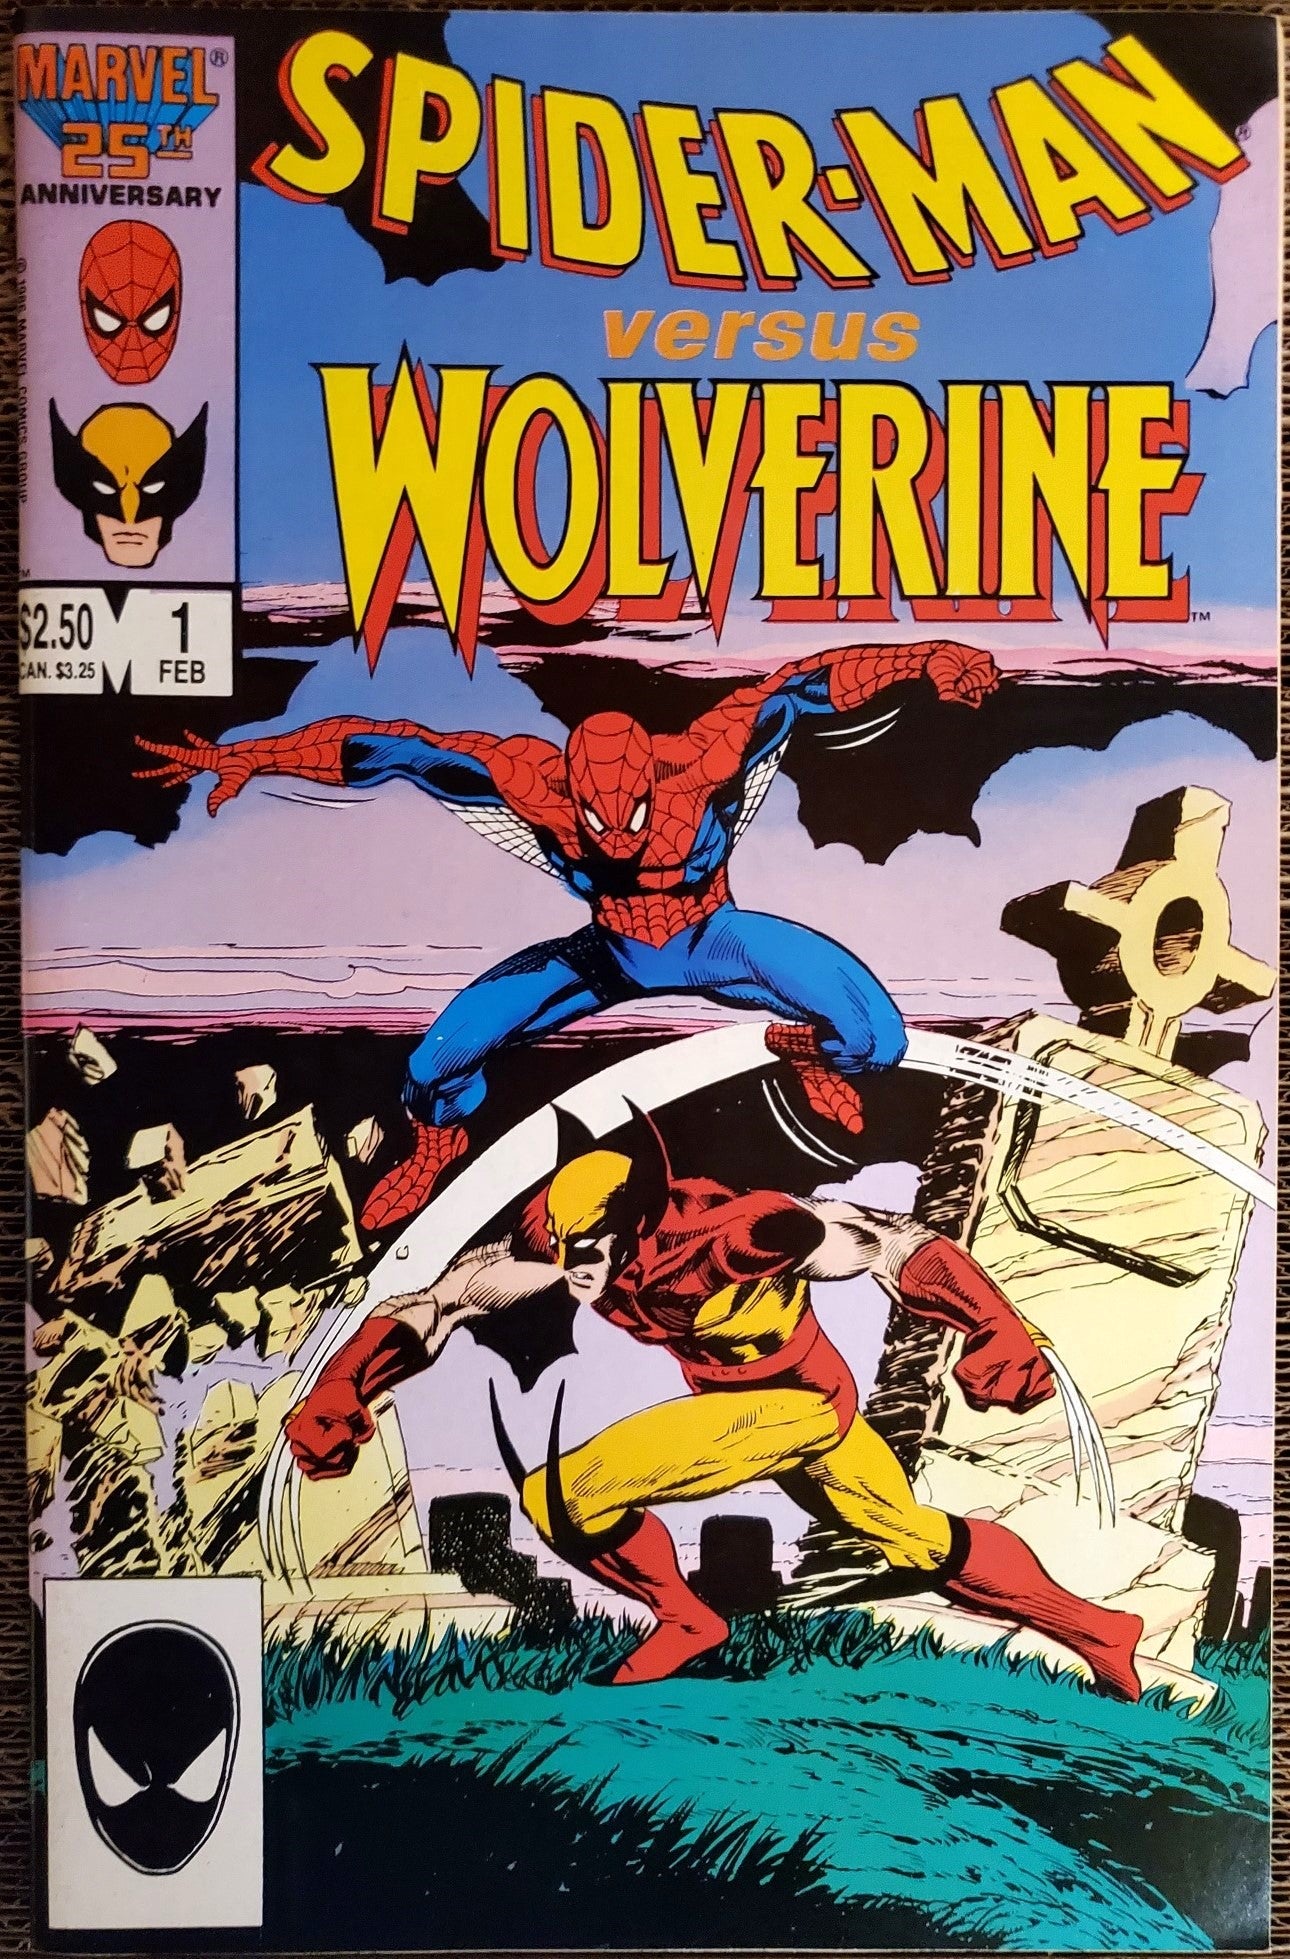 Spider-Man versus Wolverine #1